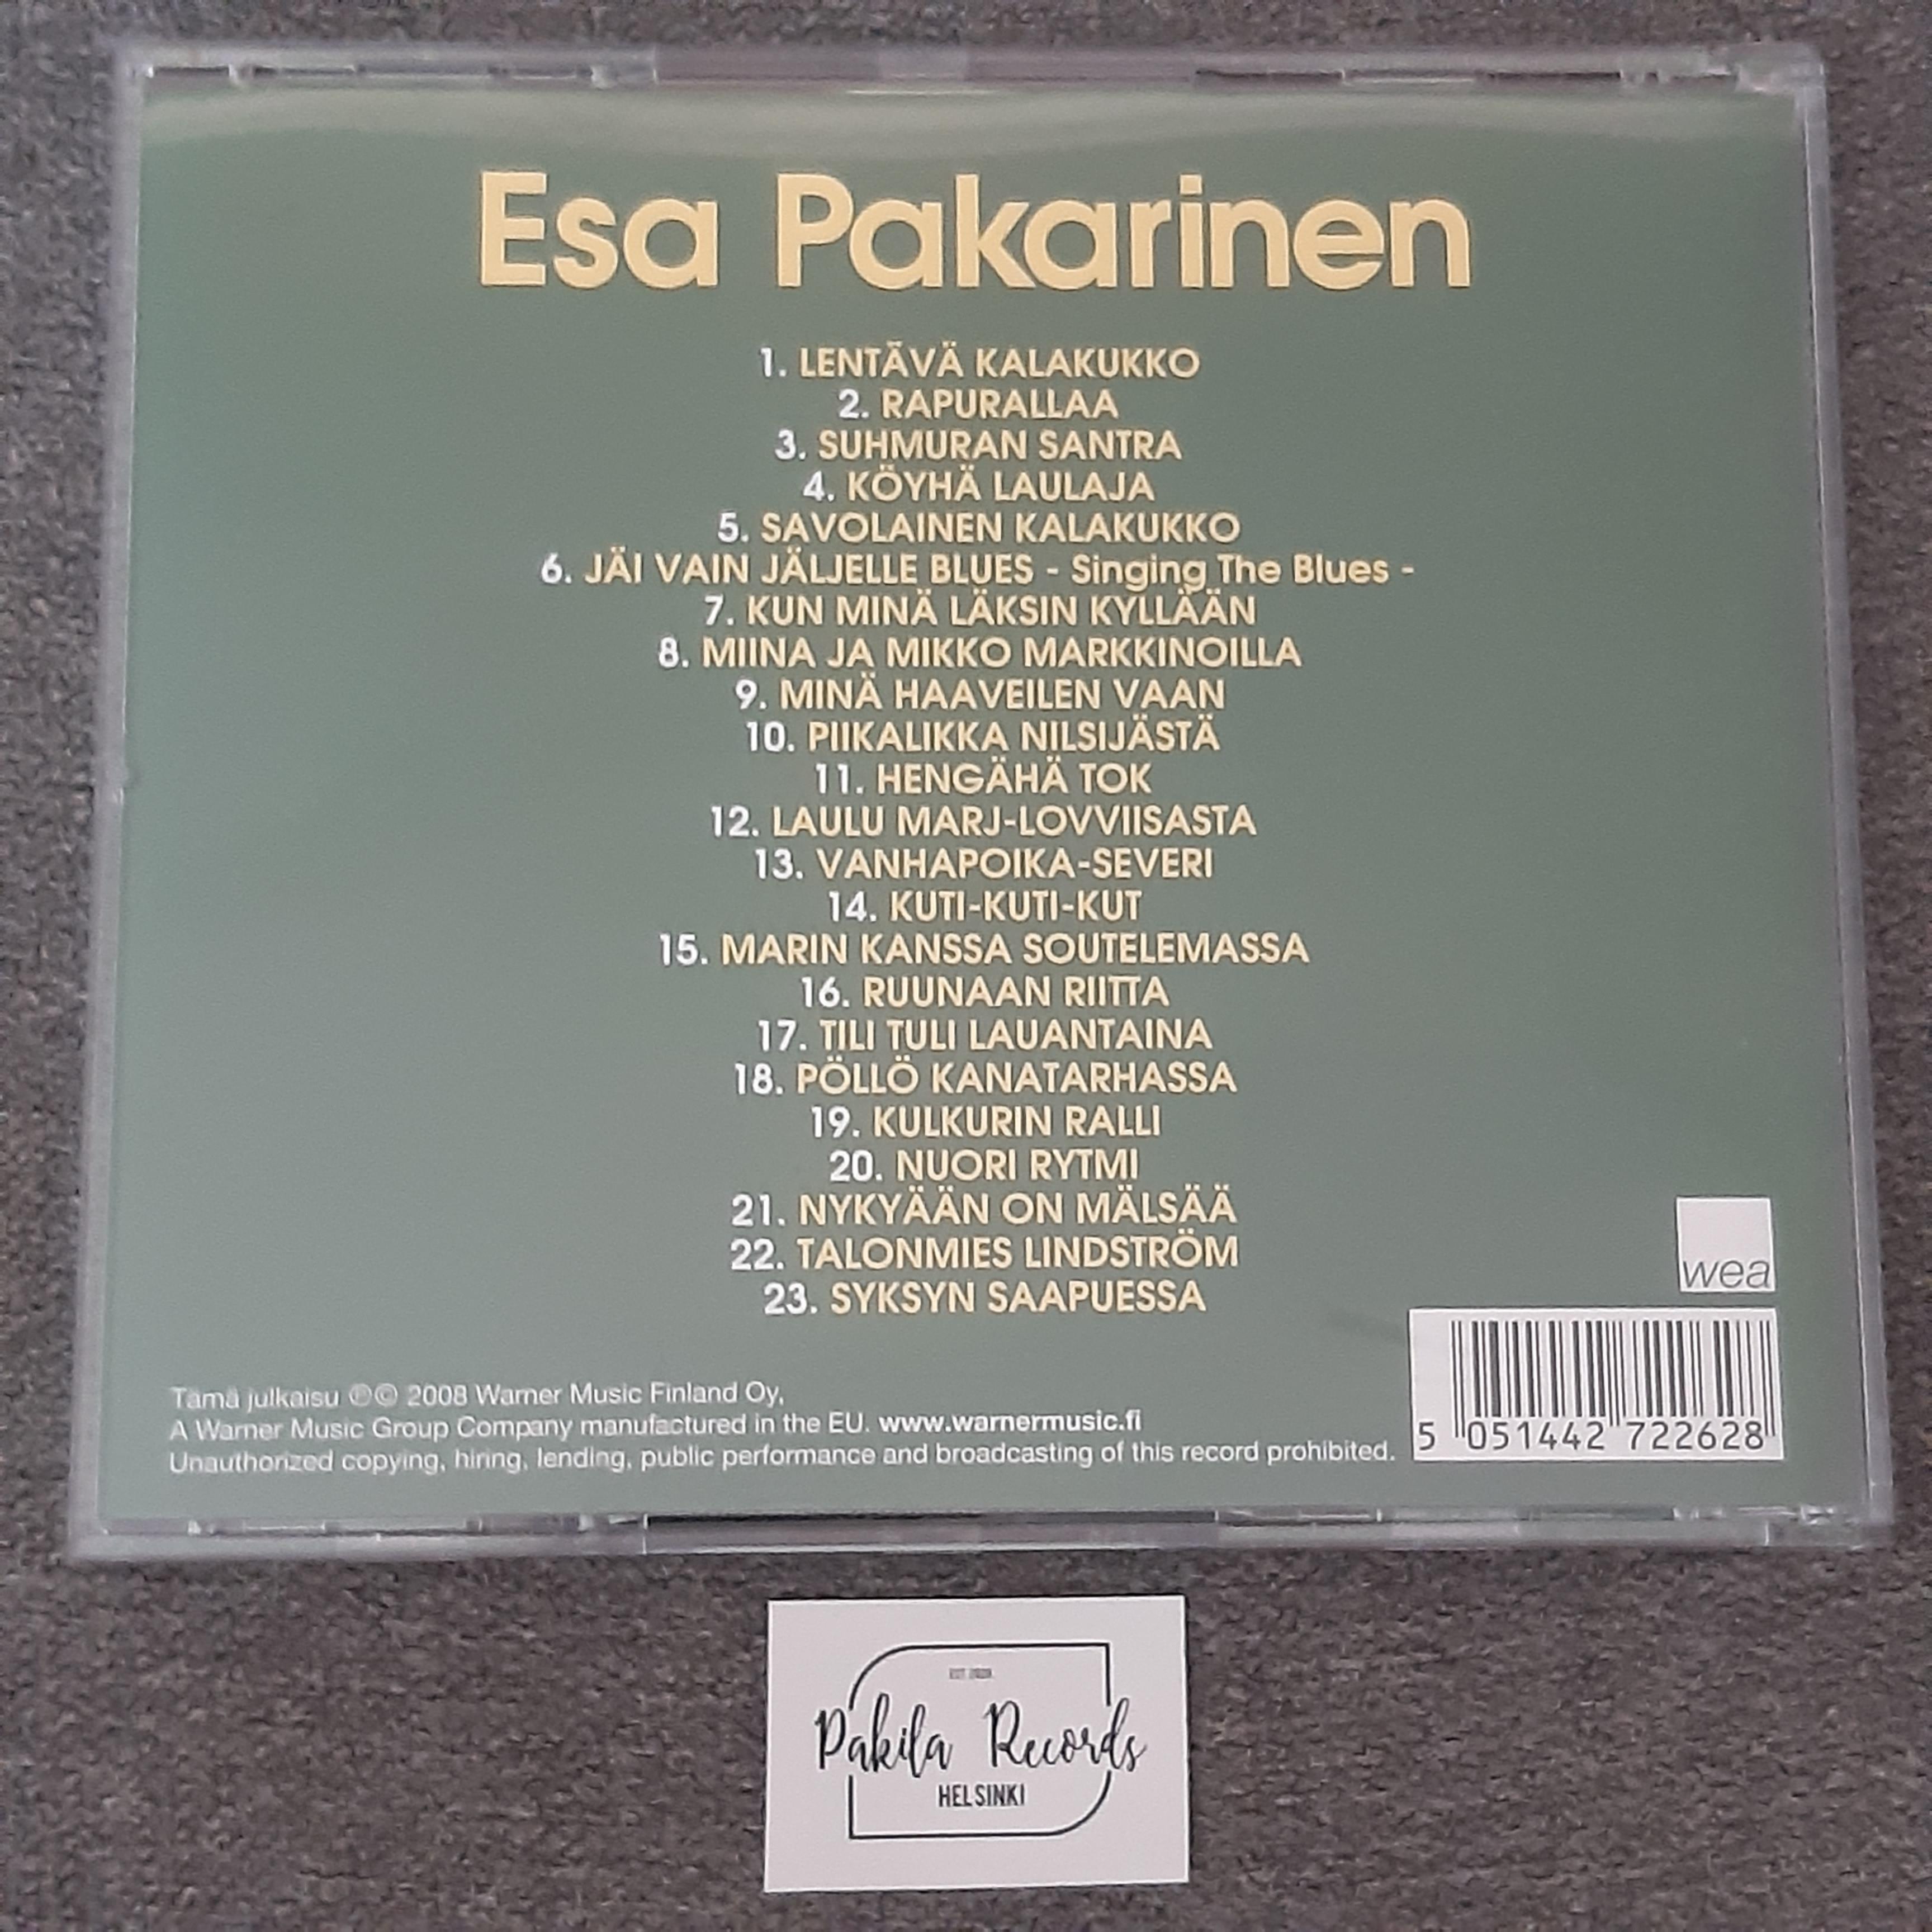 Esa Pakarinen - s/t - CD (käytetty)